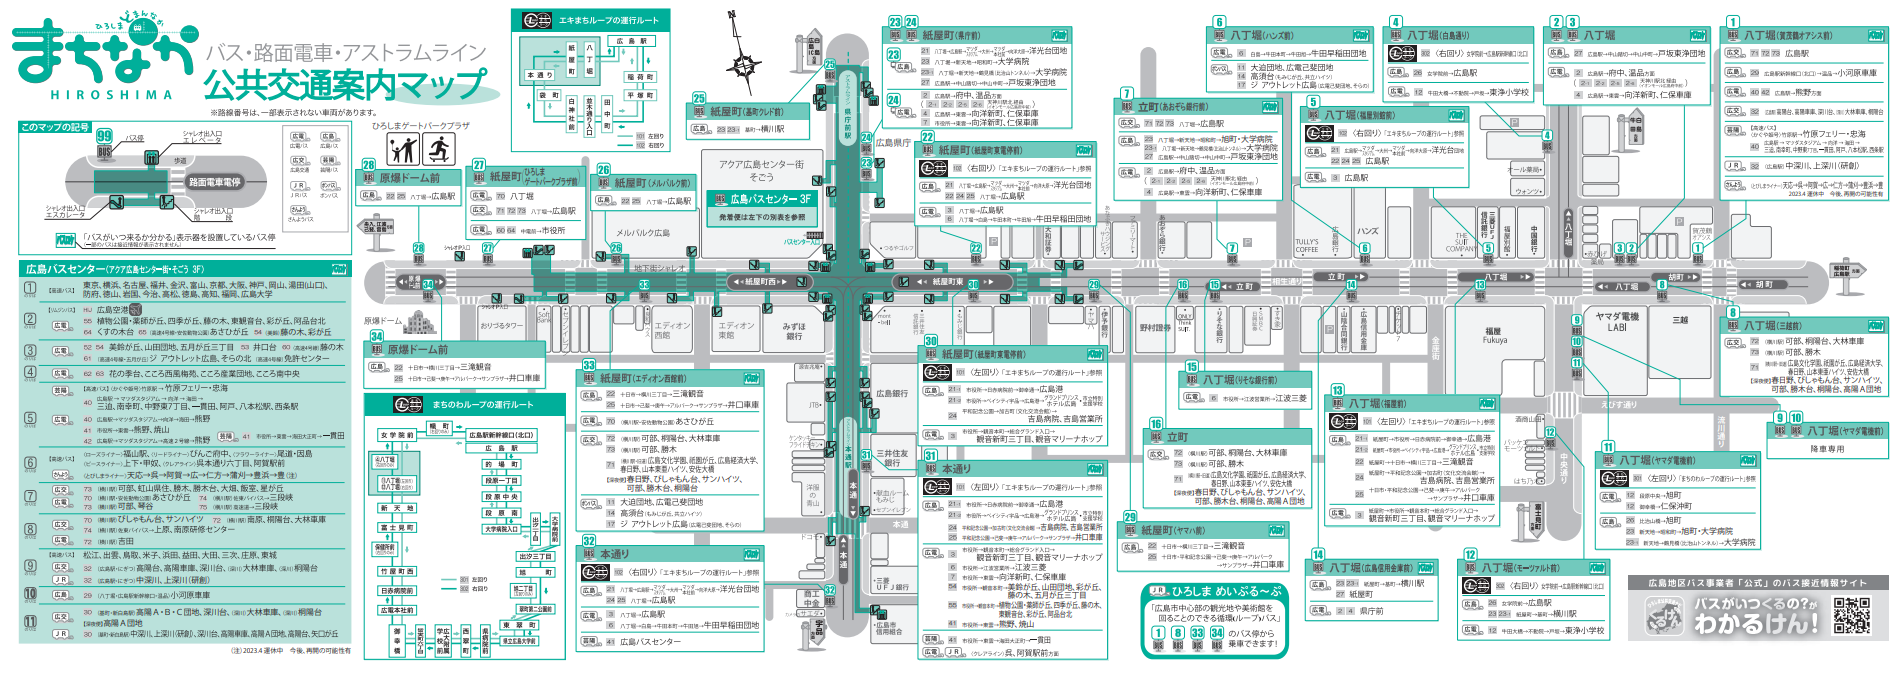 Bản đồ hướng dẫn giao thông công cộng trung tâm thành phố